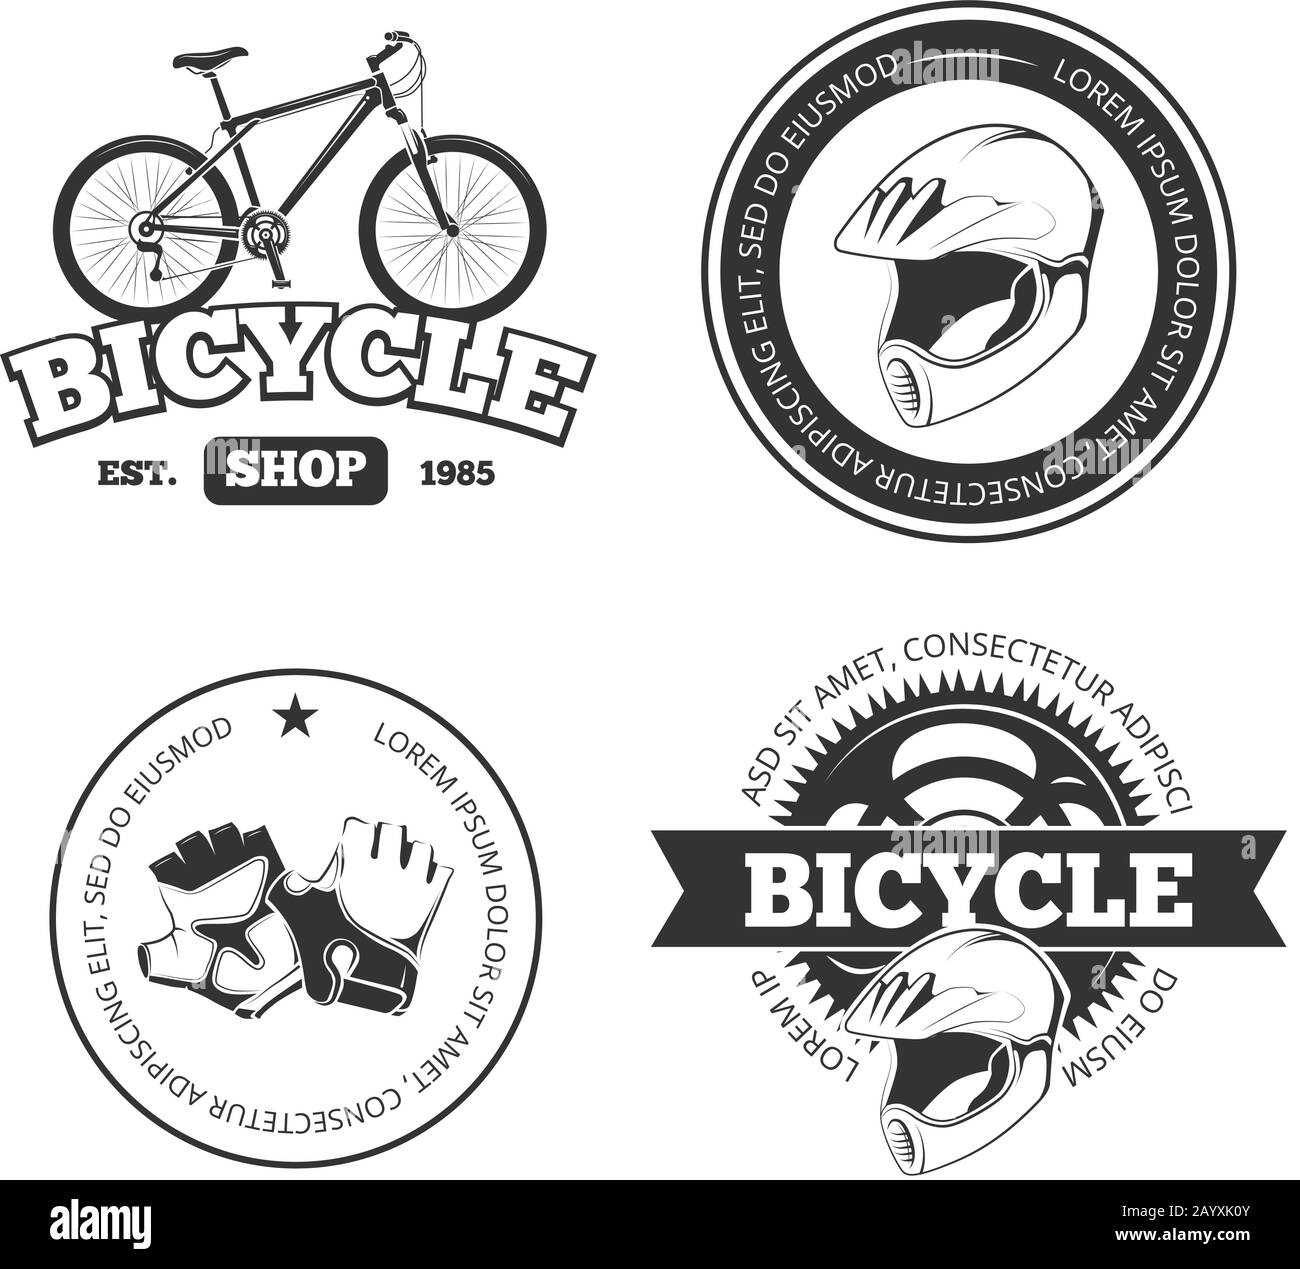 Bike shop sign Imágenes de stock en blanco y negro - Alamy